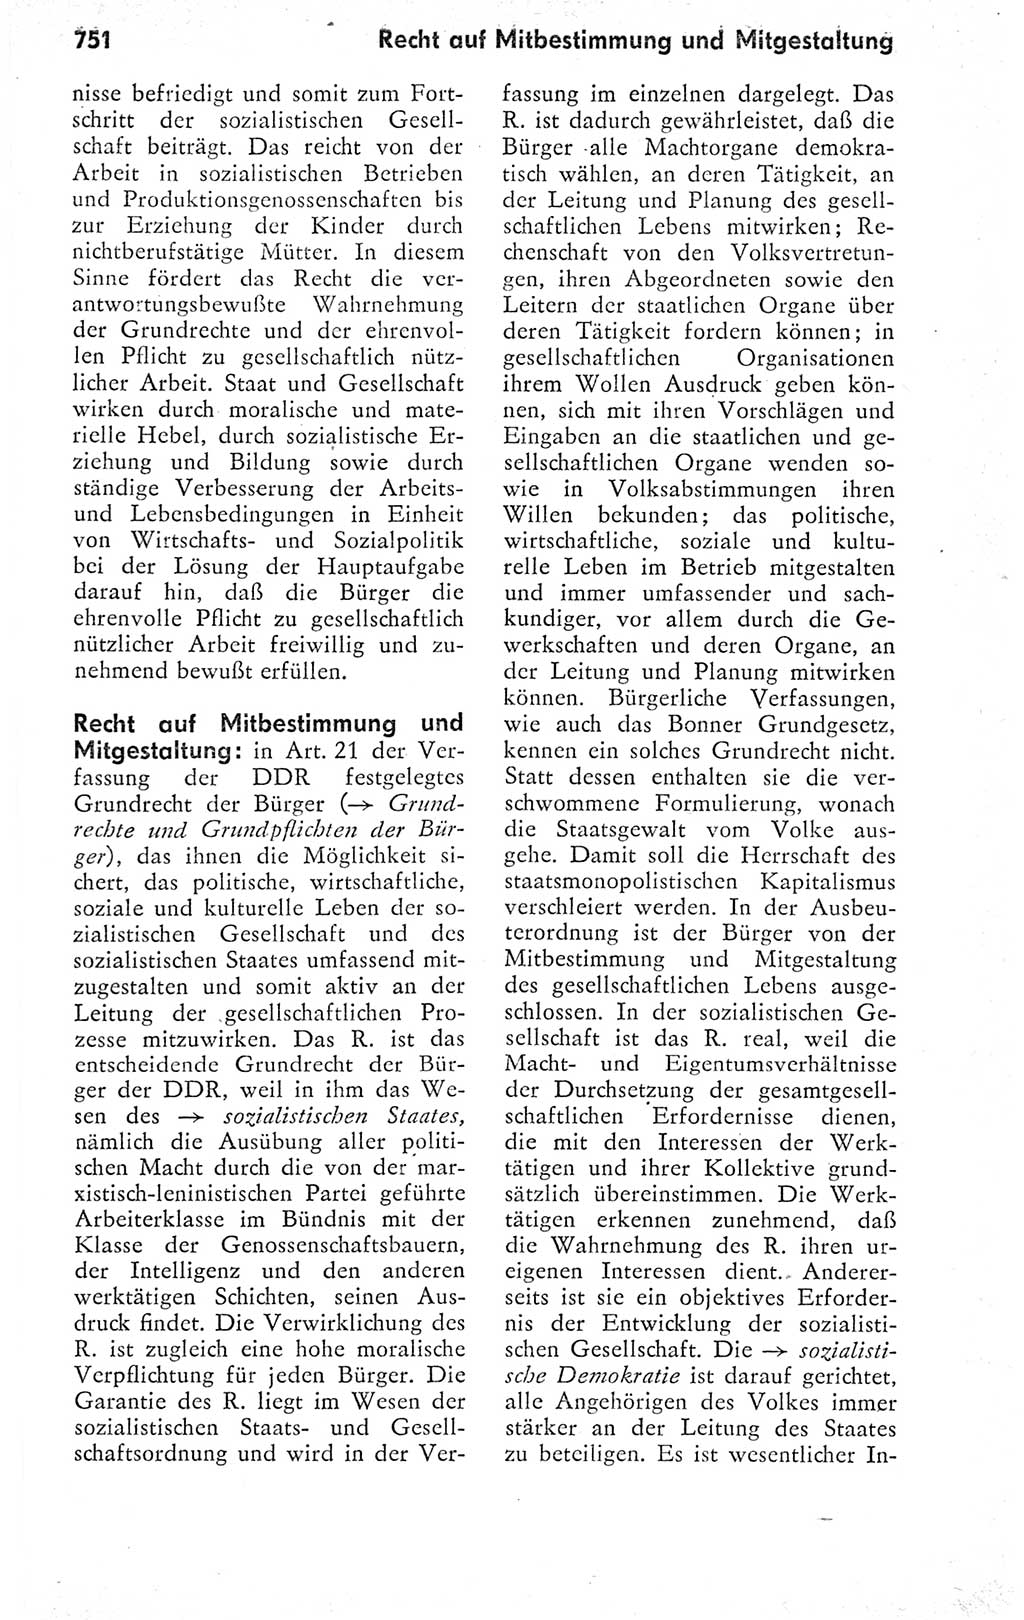 Kleines politisches Wörterbuch [Deutsche Demokratische Republik (DDR)] 1978, Seite 751 (Kl. pol. Wb. DDR 1978, S. 751)